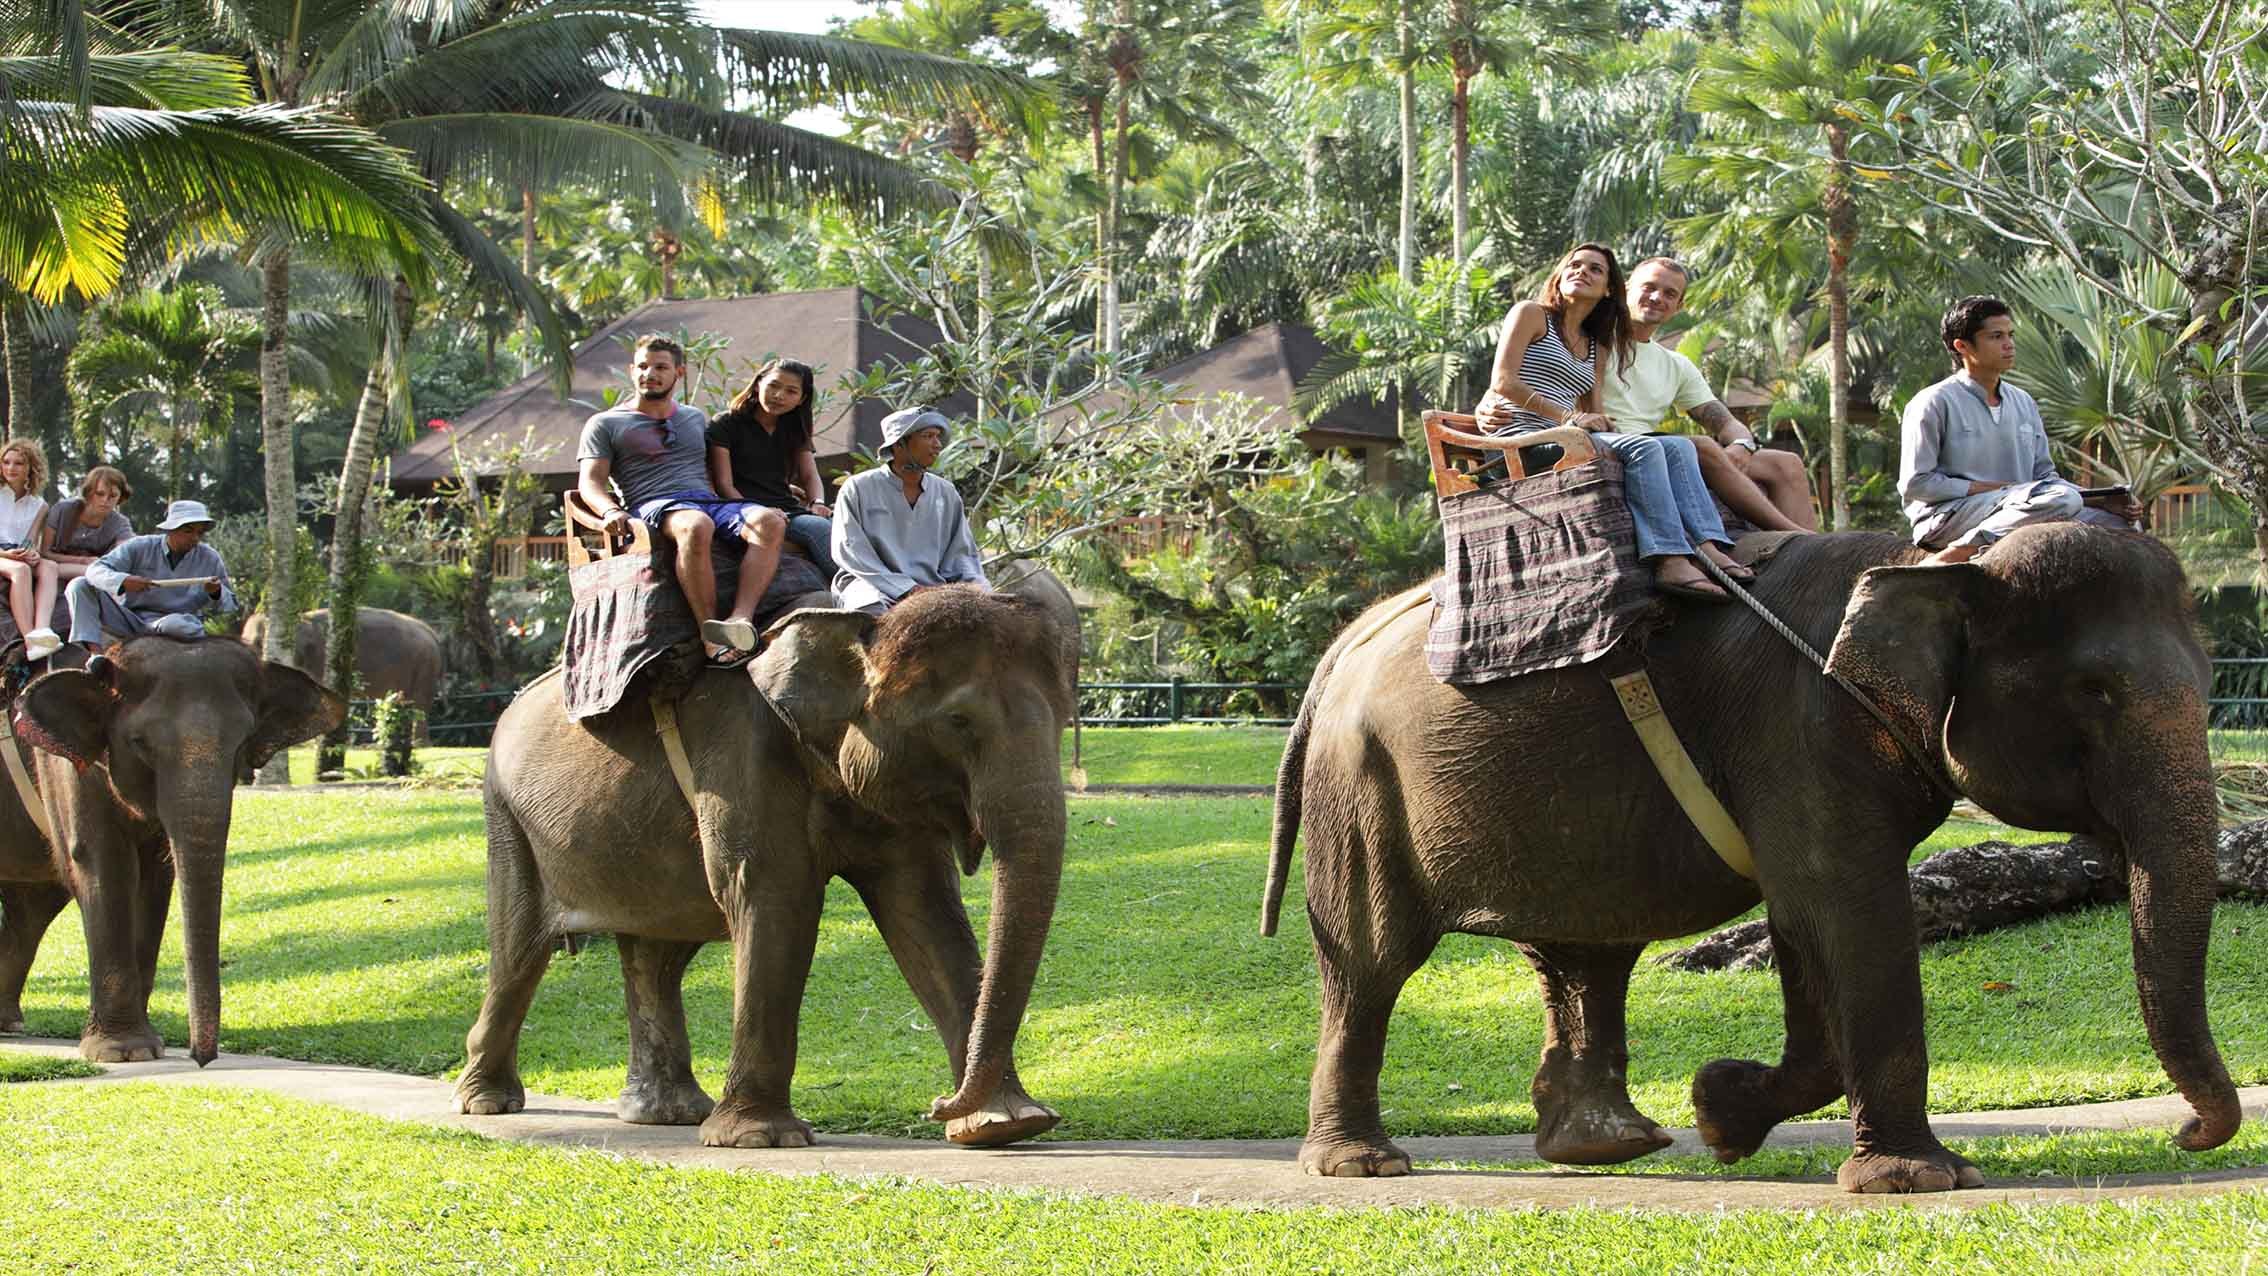 Elephant ride photo